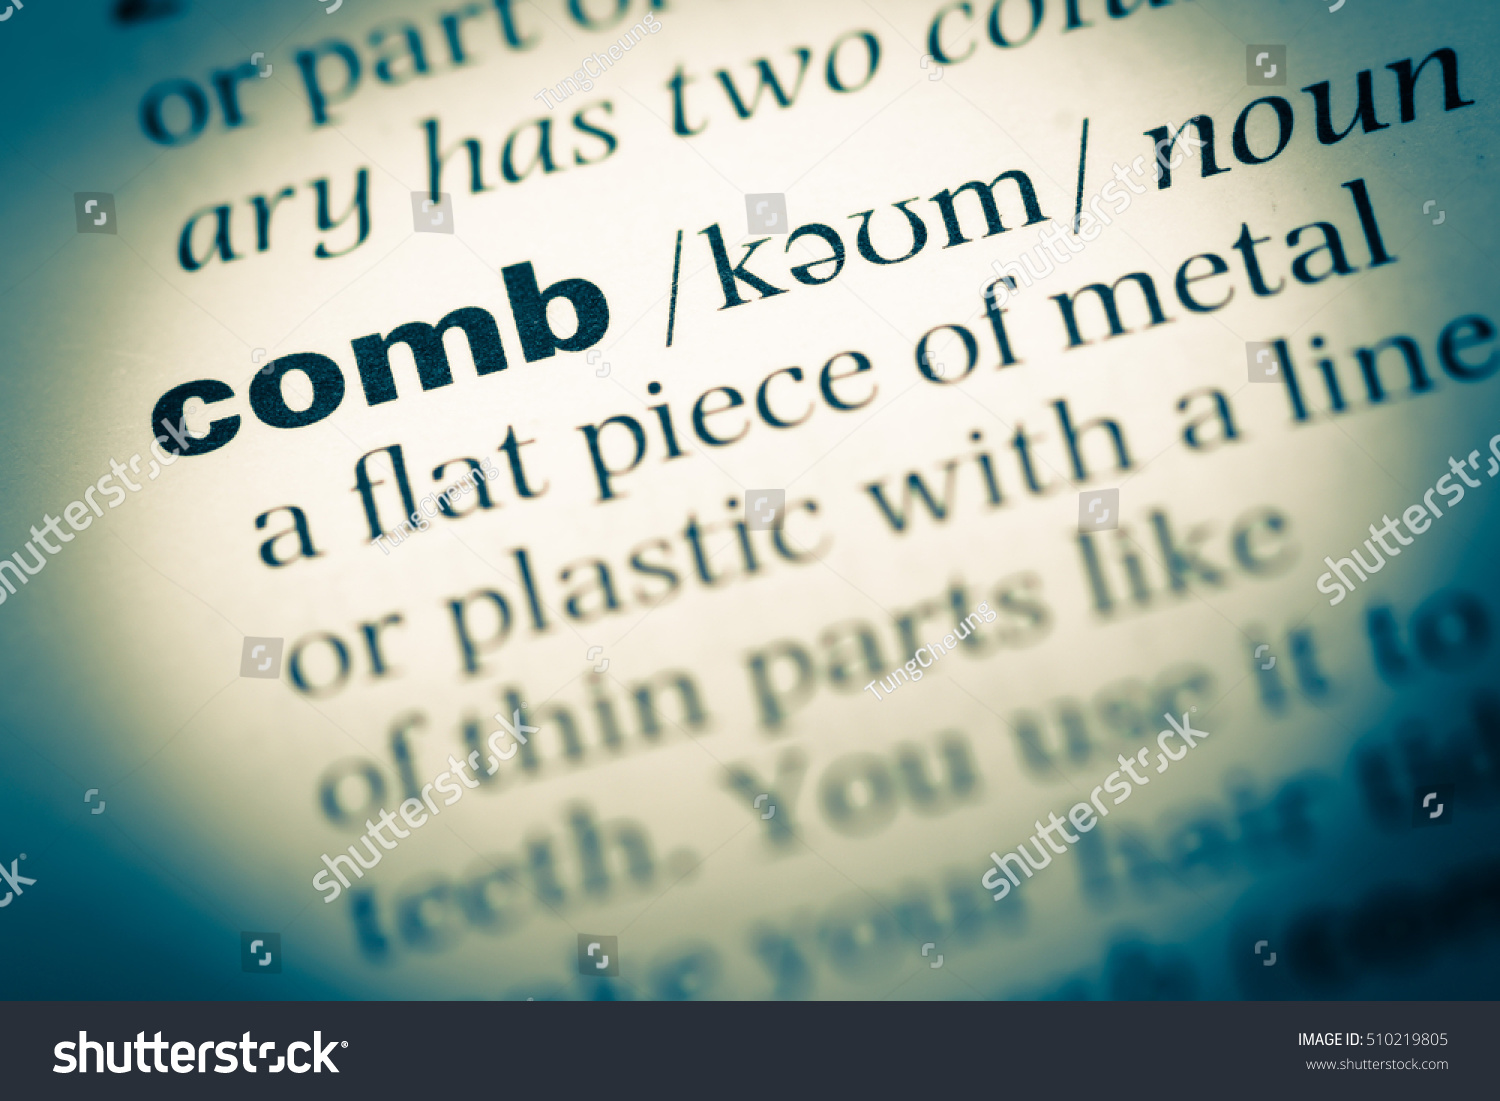 comb dictionary